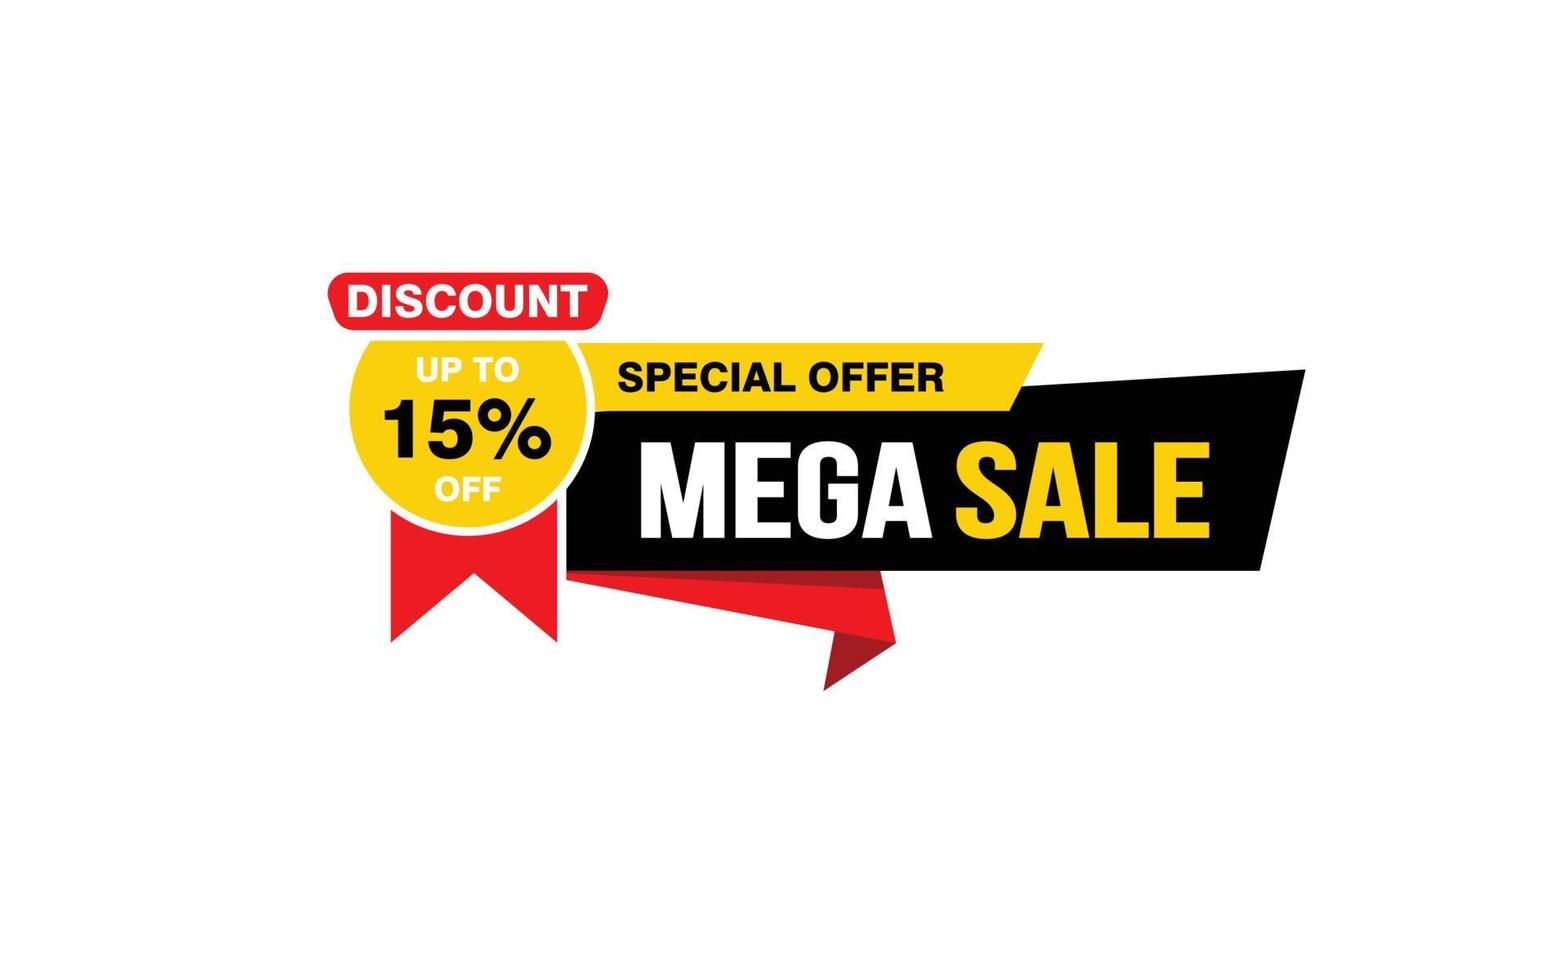 15 Prozent Mega-Sale-Angebot, Räumung, Werbebanner-Layout mit Aufkleberstil. vektor